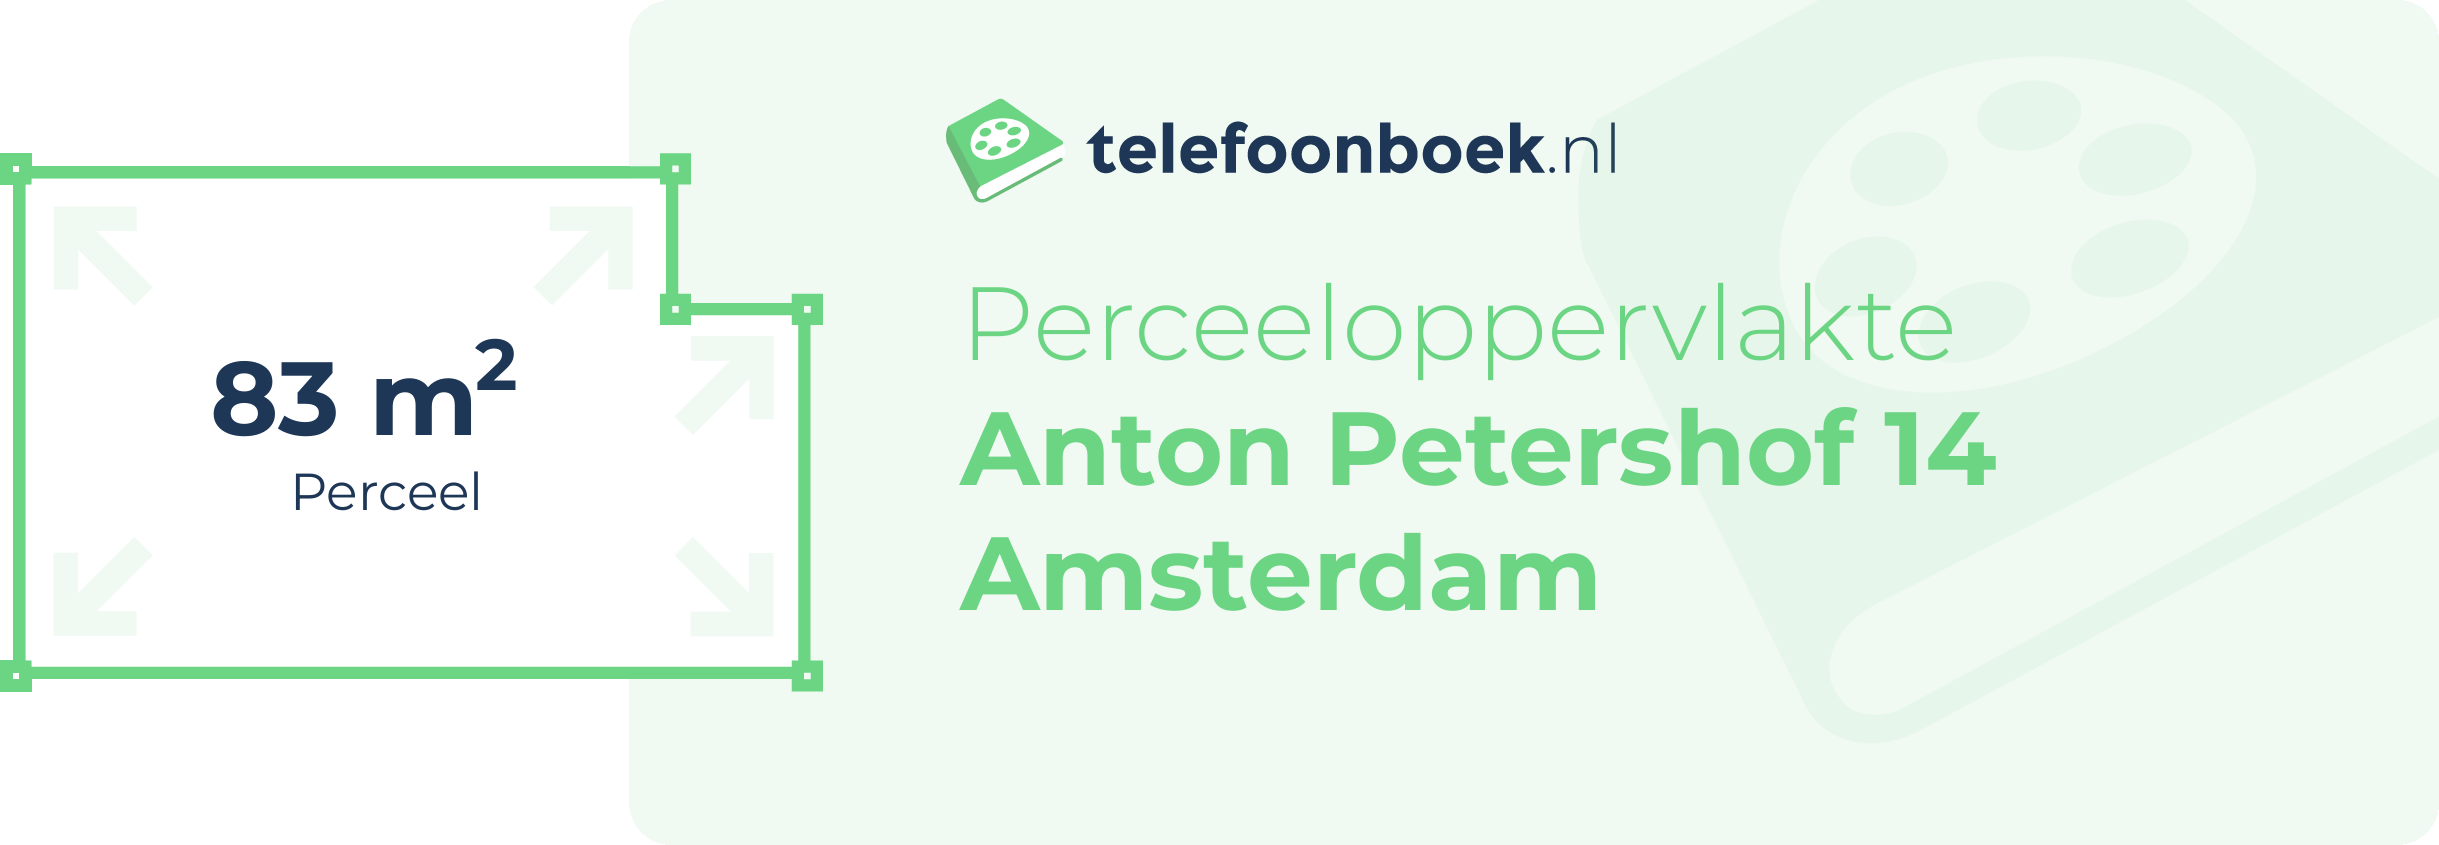 Perceeloppervlakte Anton Petershof 14 Amsterdam